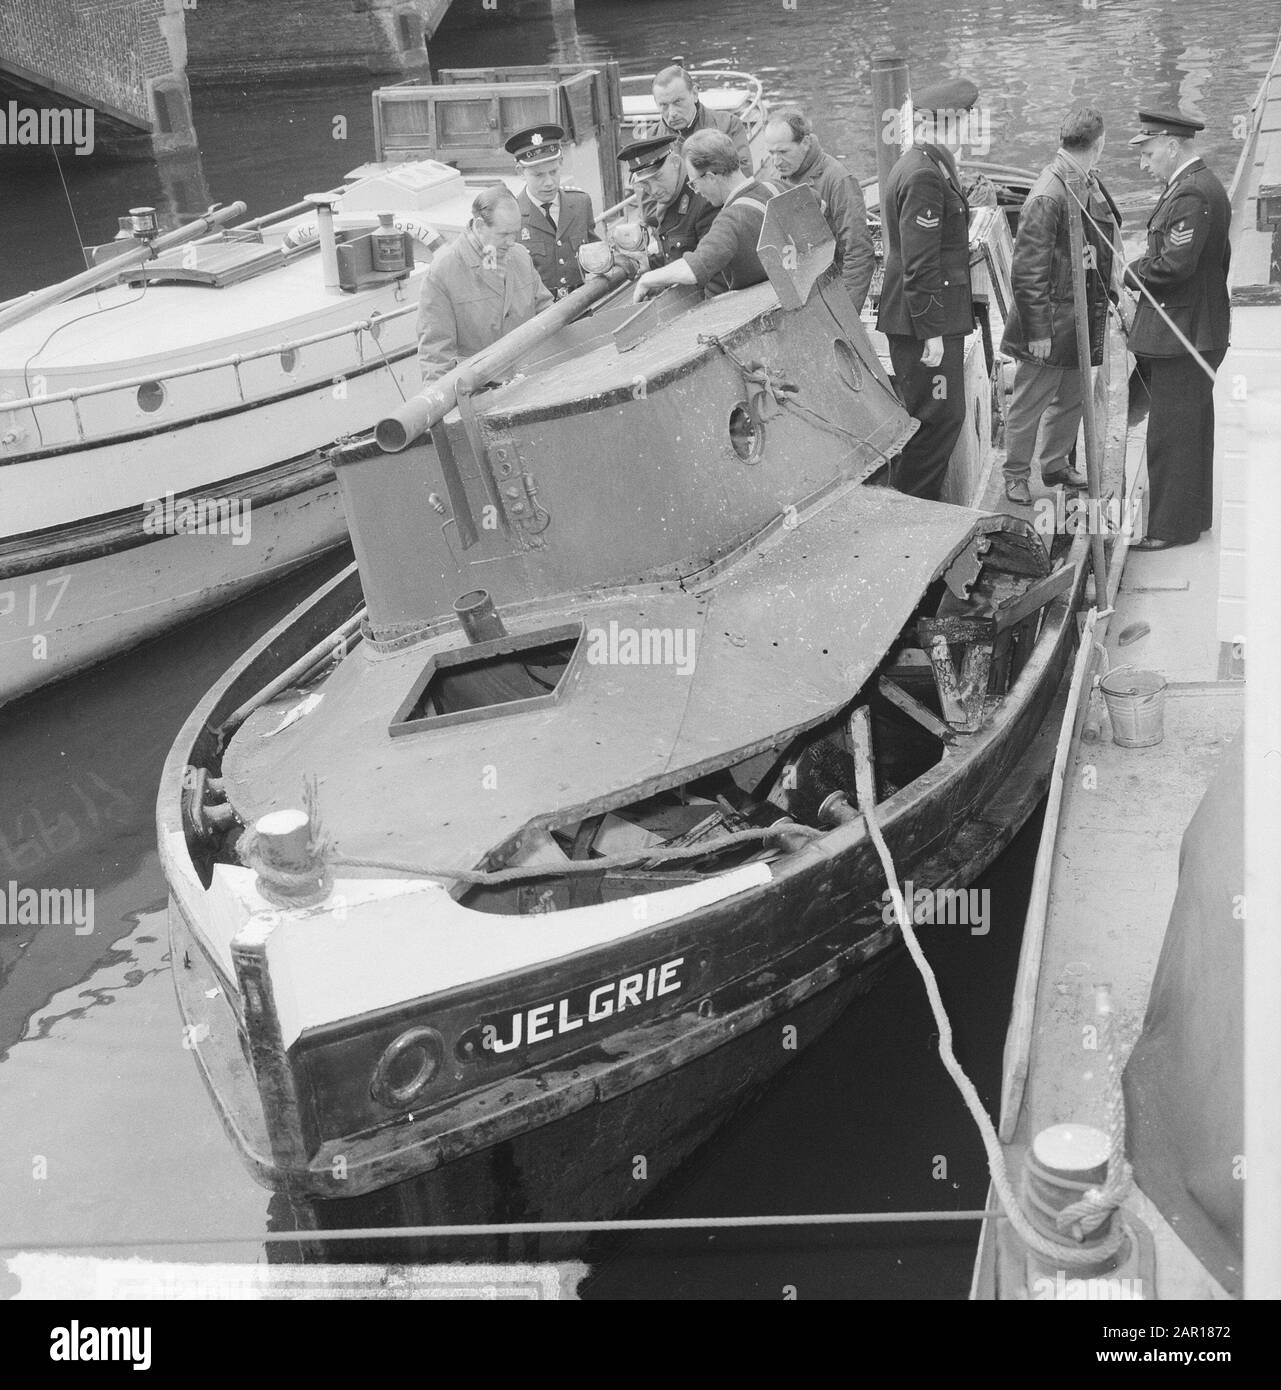 Schleppboot explodierte innen in Amsterdam de Jelgrie, dessen Oberdeck abgerissen wurde Datum: 27. april 1965 Standort: Amsterdam, Noord-Holland Schlagwörter: Explosionen, Schlepper Stockfoto